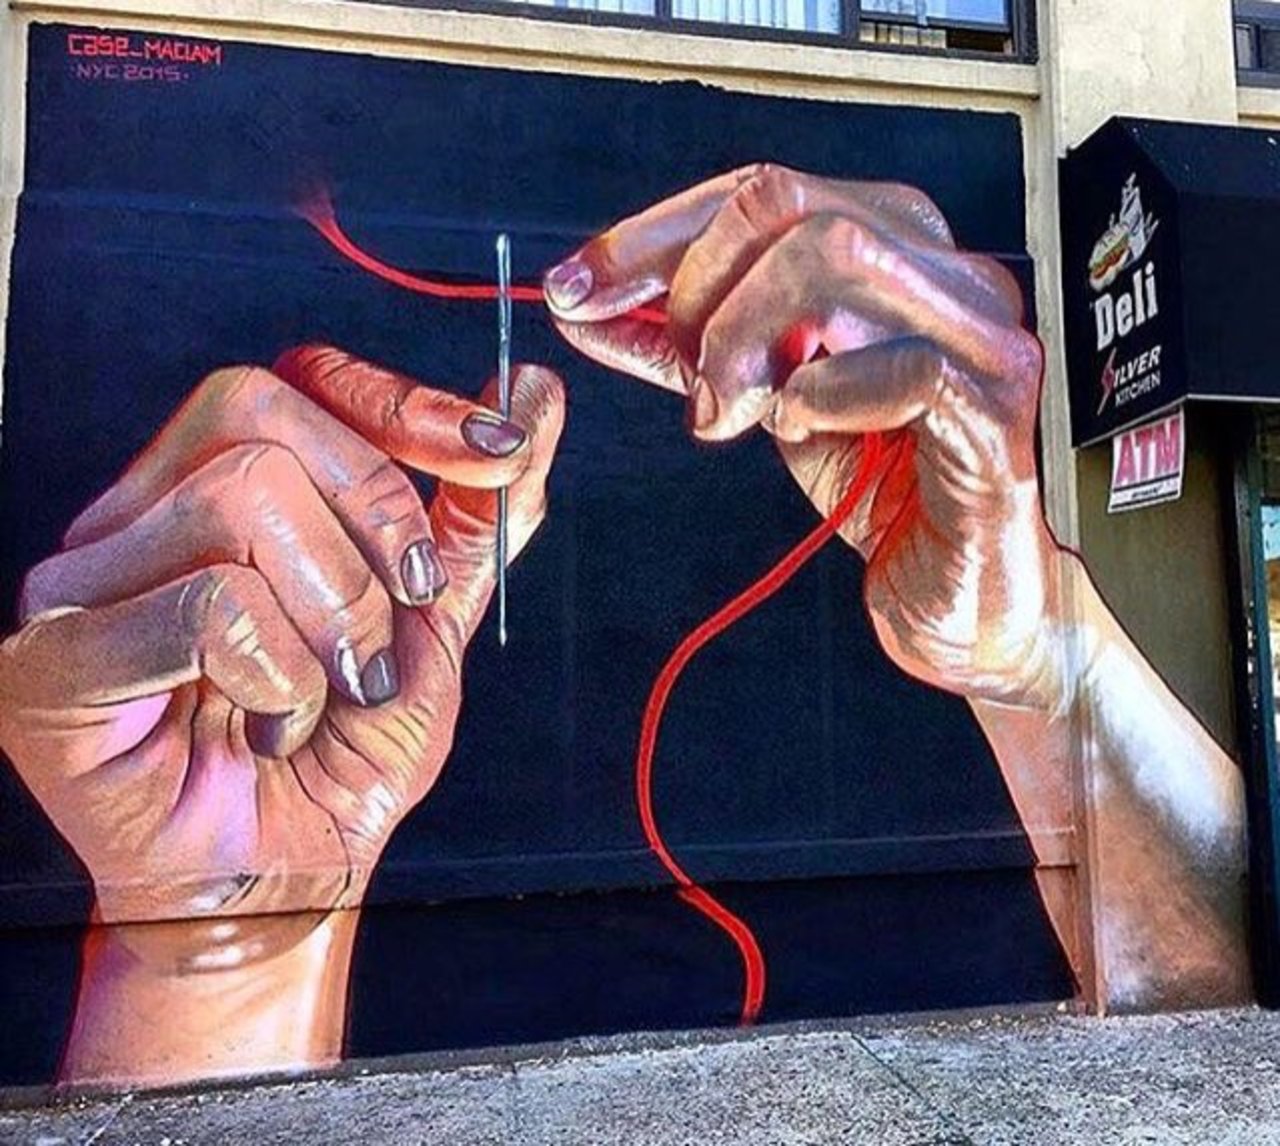 RT belilac "New Street Art by Case Ma'Claim in NYC 

#art #graffiti #mural #streetart https://t.co/NJdah1TvwV"